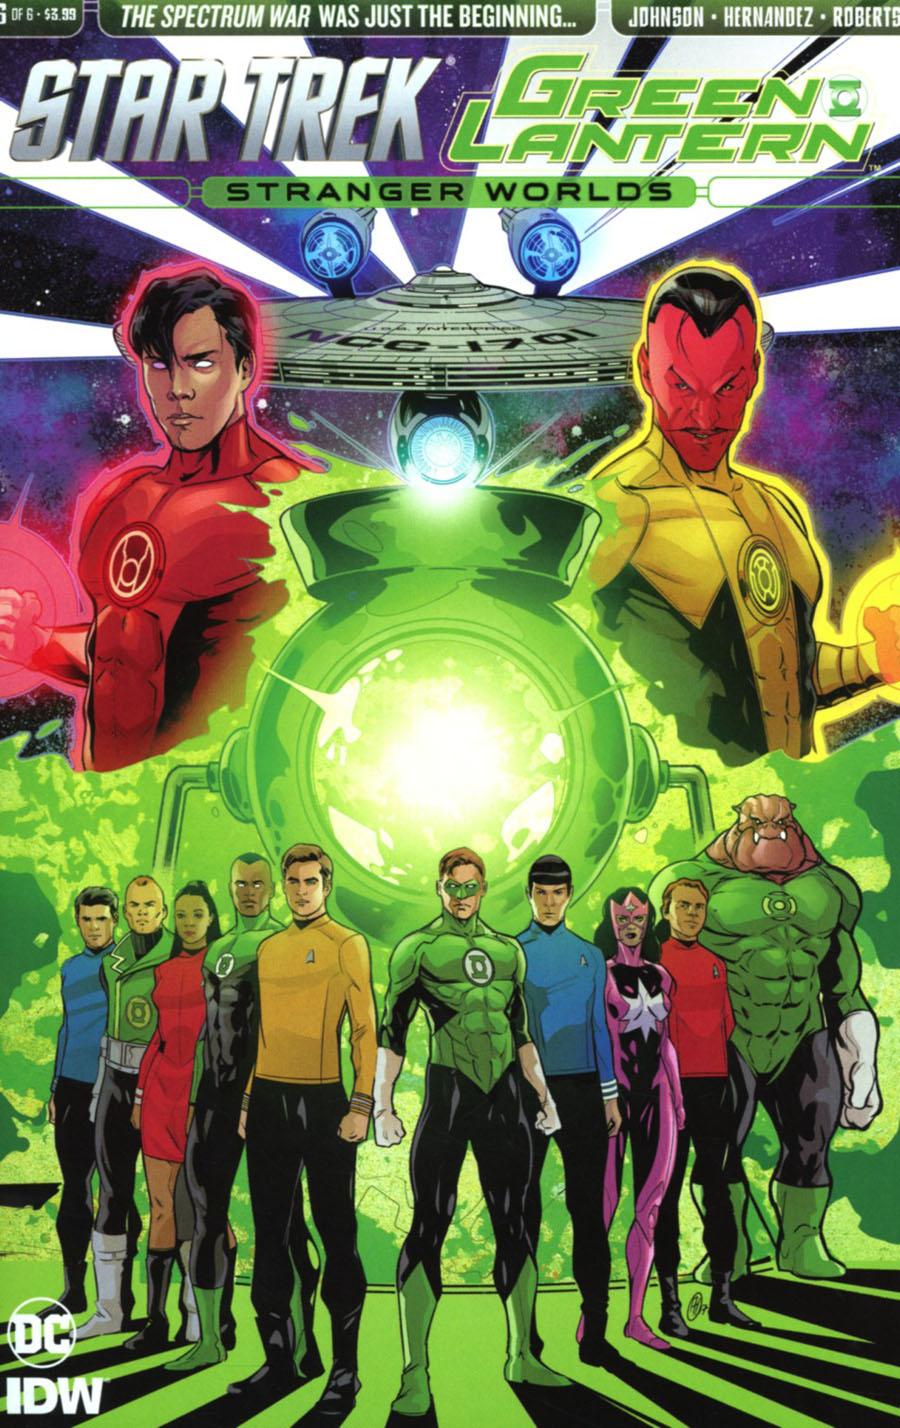 Star Trek Green Lantern Vol. 2 Stranger Worlds #6